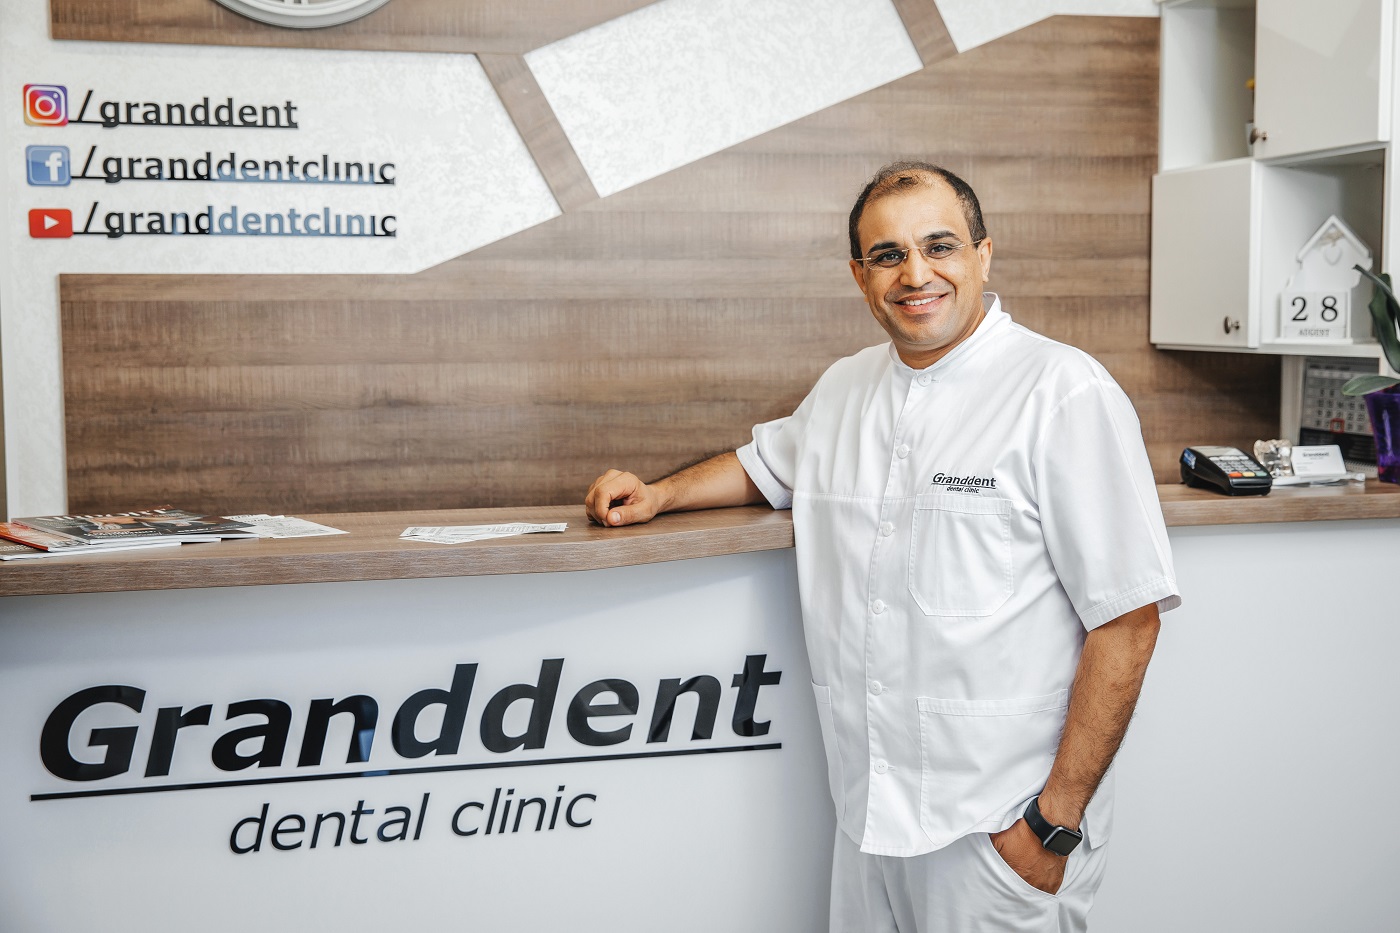 Головний лікар стоматологічної поліклініки Granddent